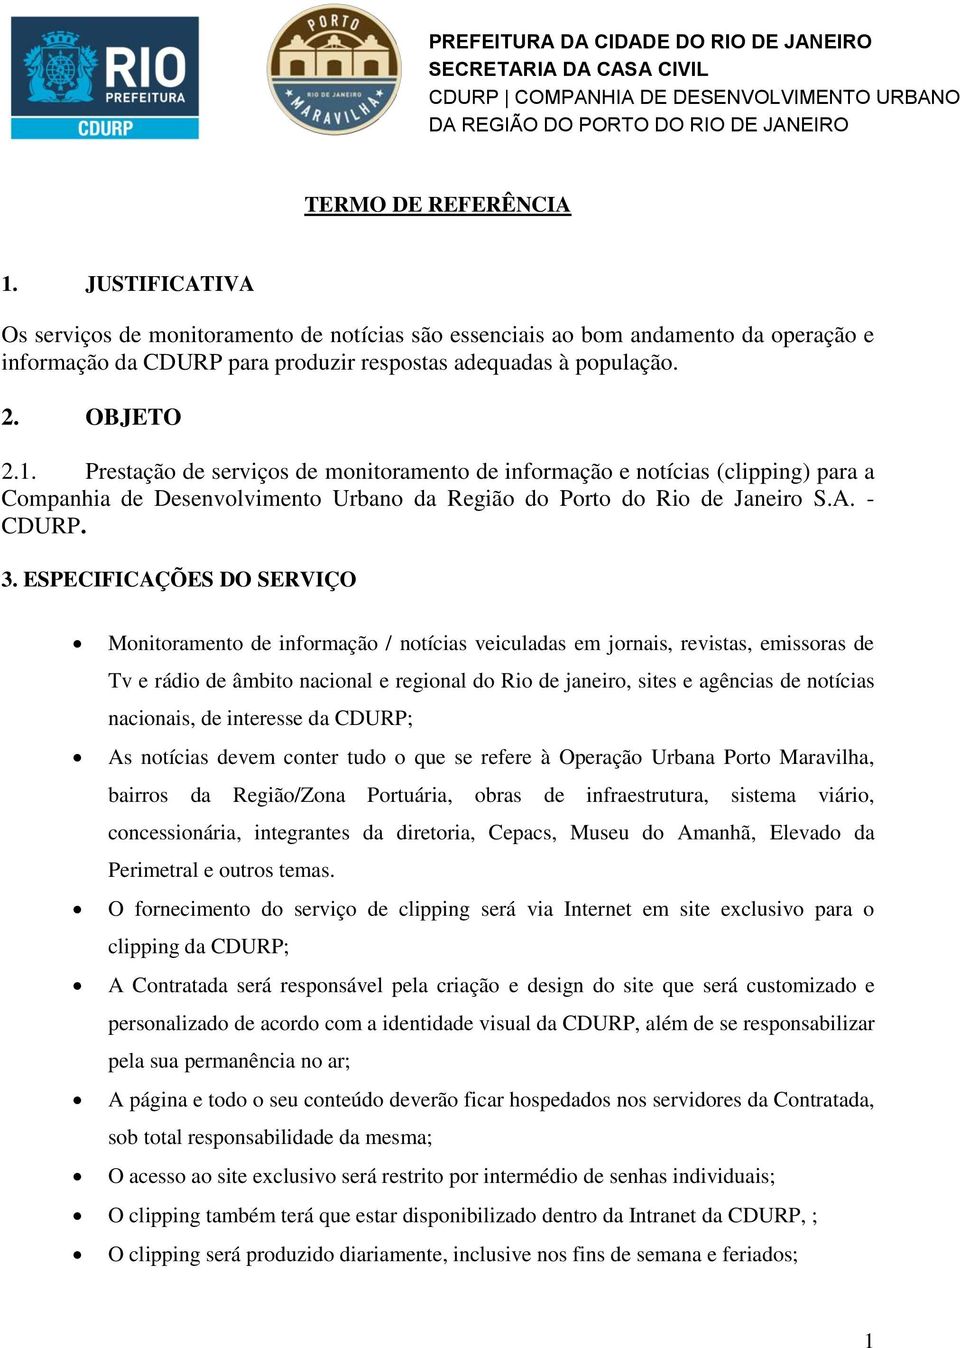 Prestação de serviços de monitoramento de informação e notícias (clipping) para a Companhia de Desenvolvimento Urbano da Região do Porto do Rio de Janeiro S.A. - CDURP. 3.